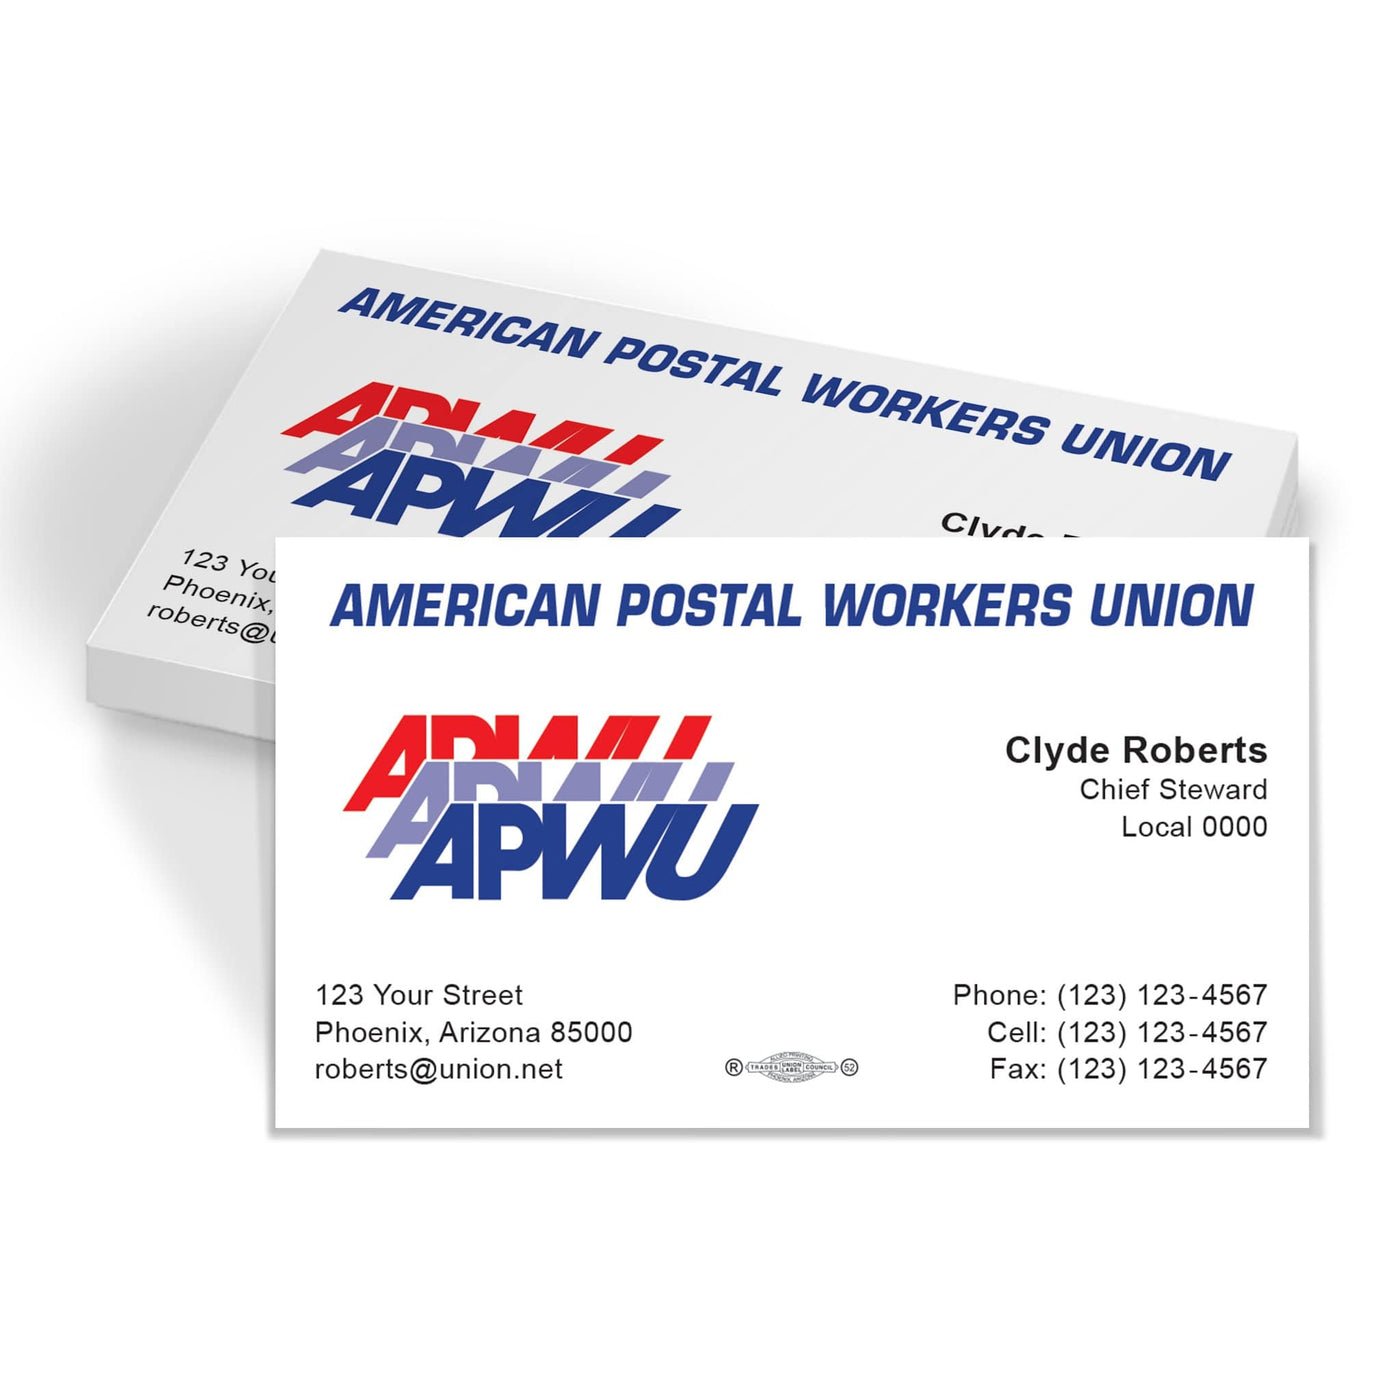 APWU Union Printed Business Cards - APWU-101